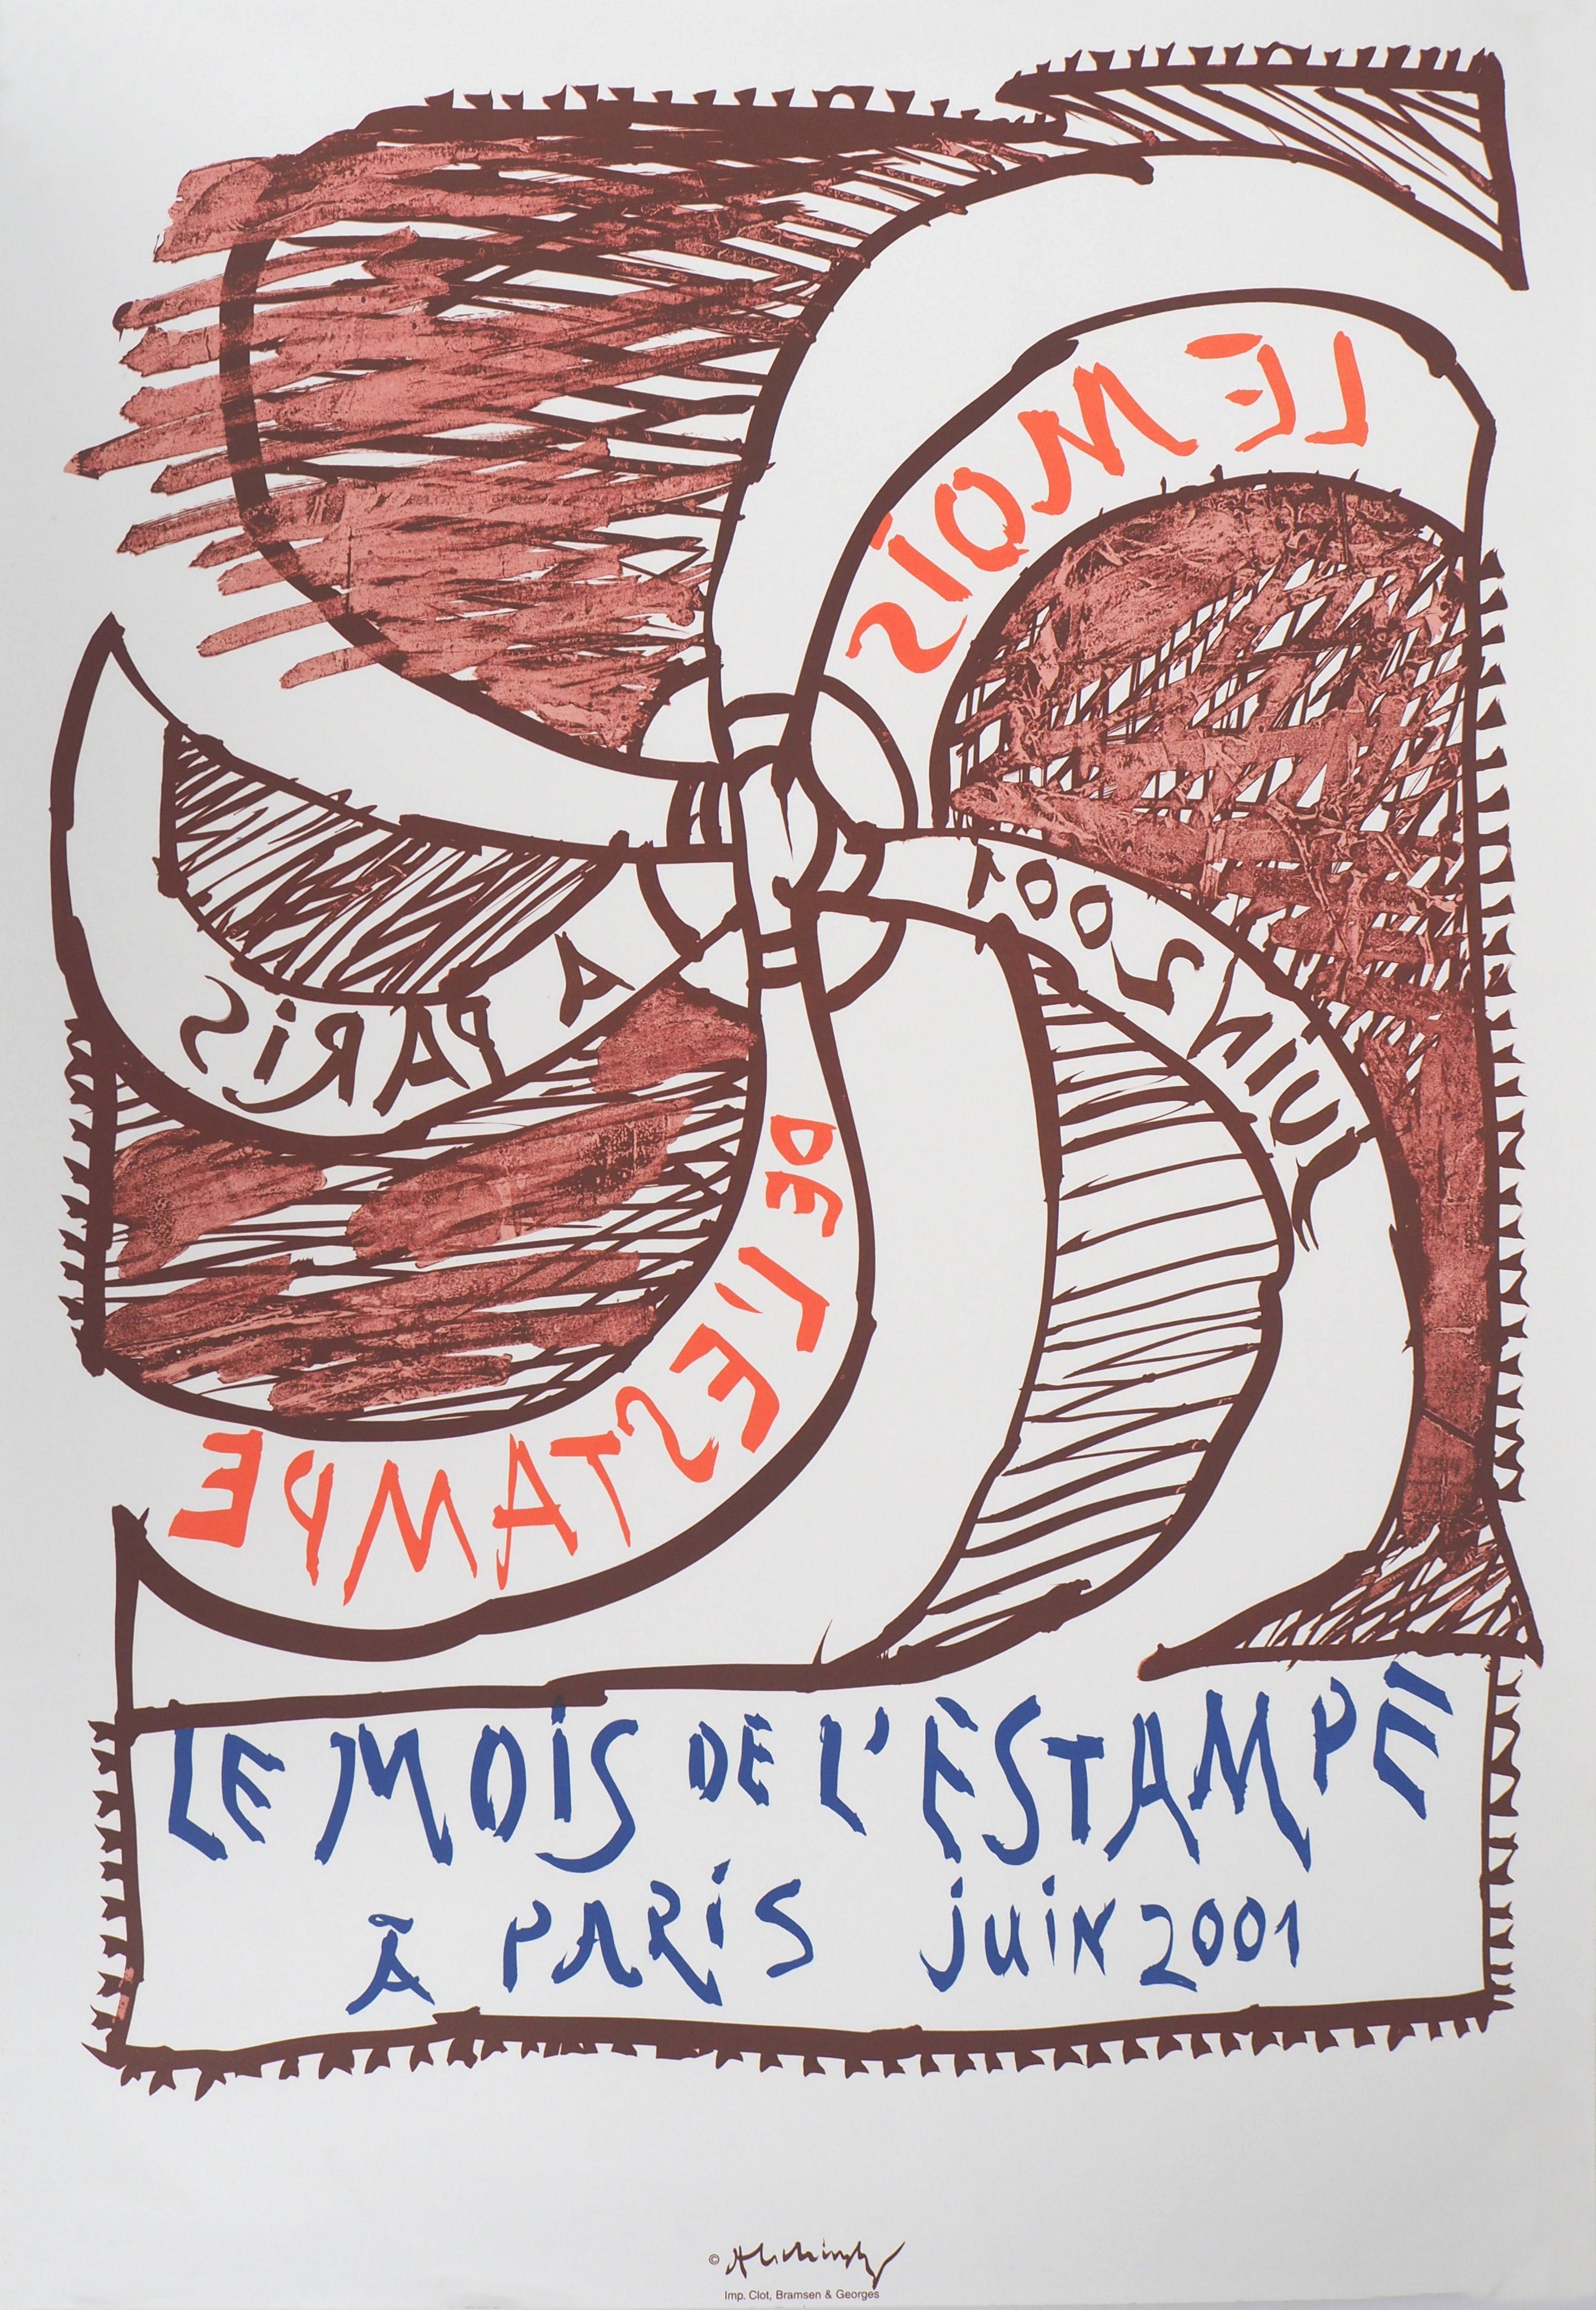 The Wheel (Mois de l'Estampe) - Vintage Lithograph Poster, 2001